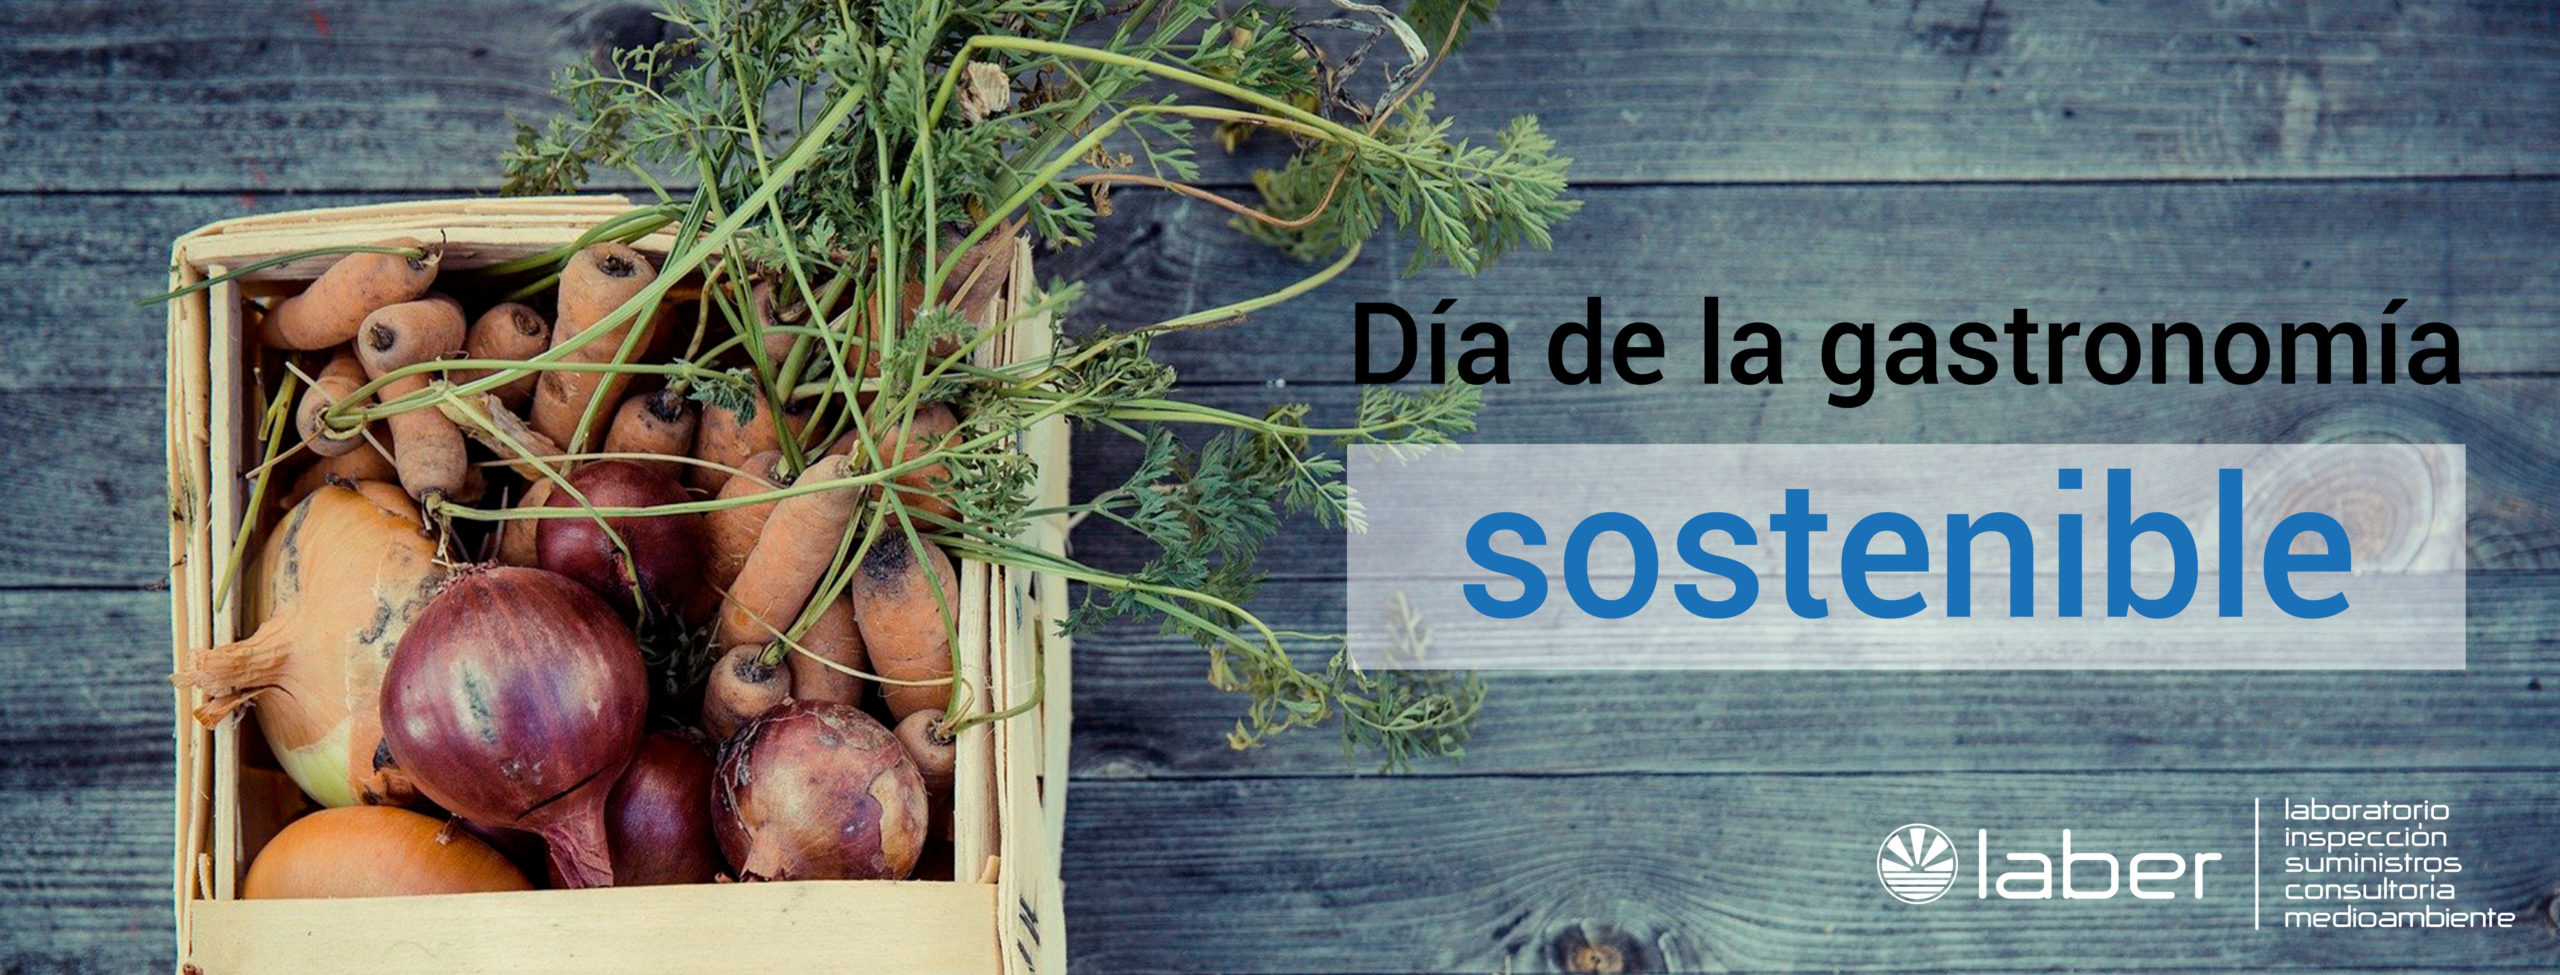 Dia de la gastronomía sostenible, consultoría, medioambiente, Corporación Laber